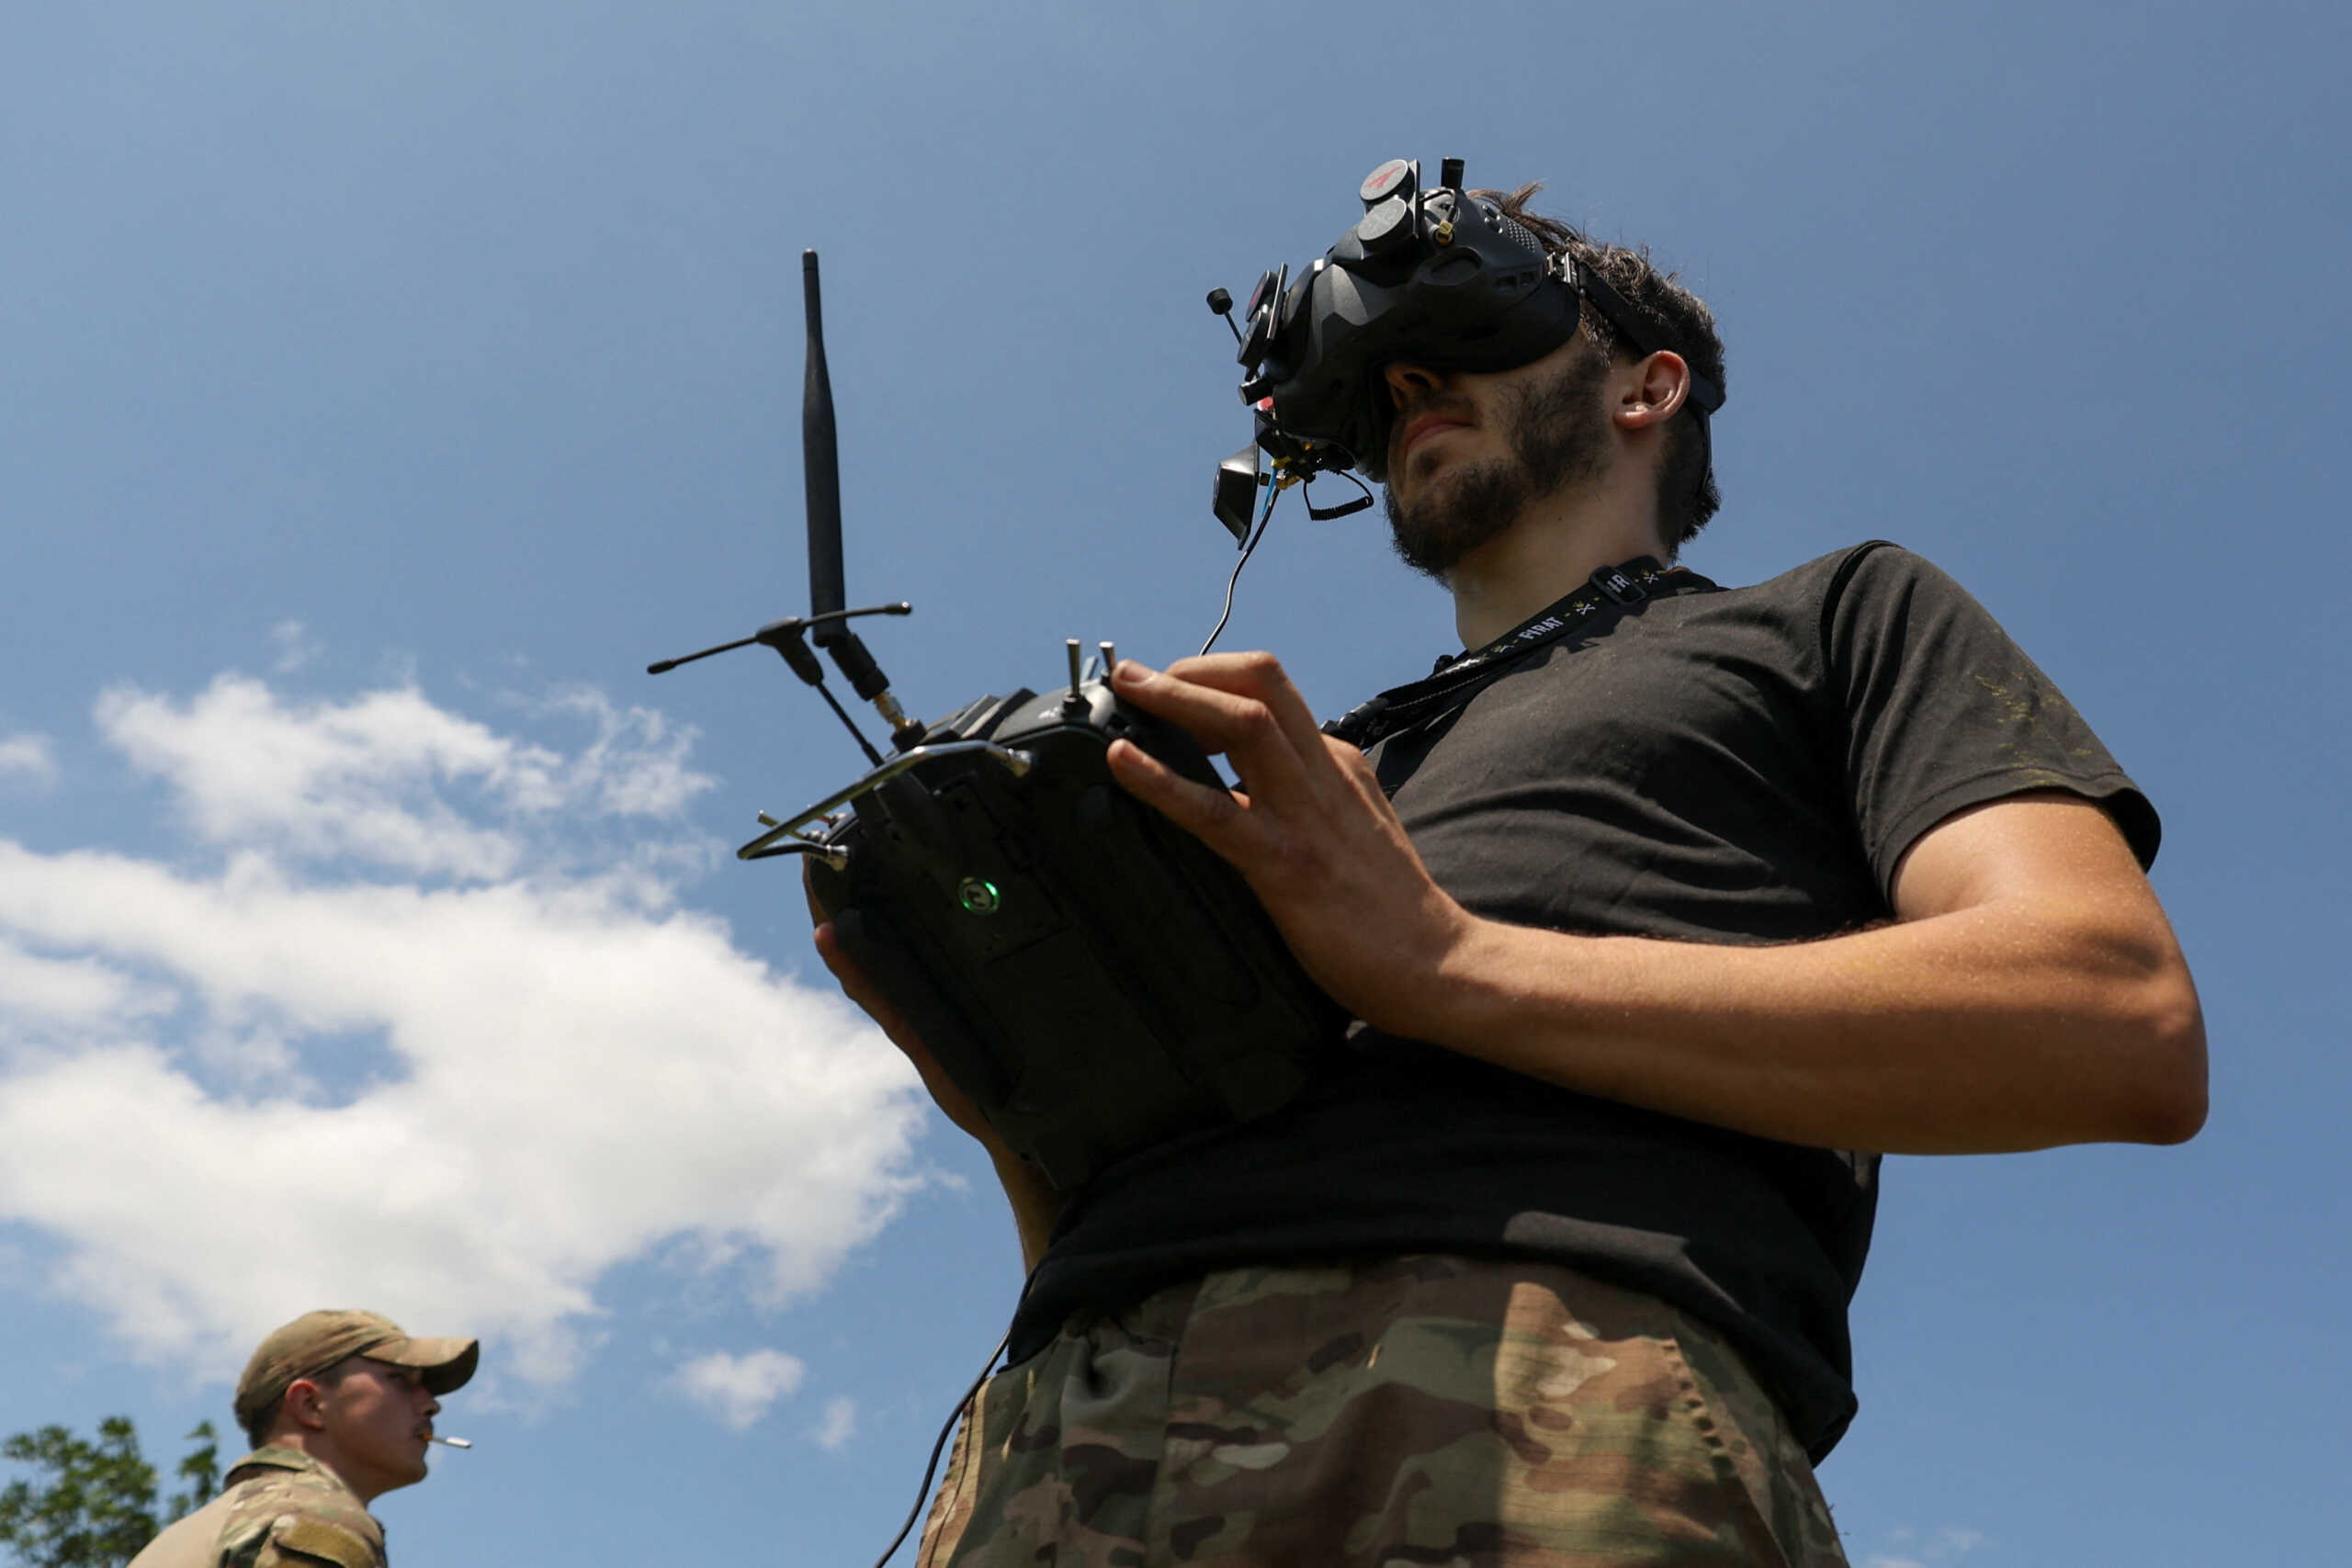 Πόλεμος στην Ουκρανία: «Είδες μαμά; Τελικά τα βιντεοπαιχνίδια ήταν χρήσιμα» λέει νεαρός  στρατιώτης, χειριστής drone